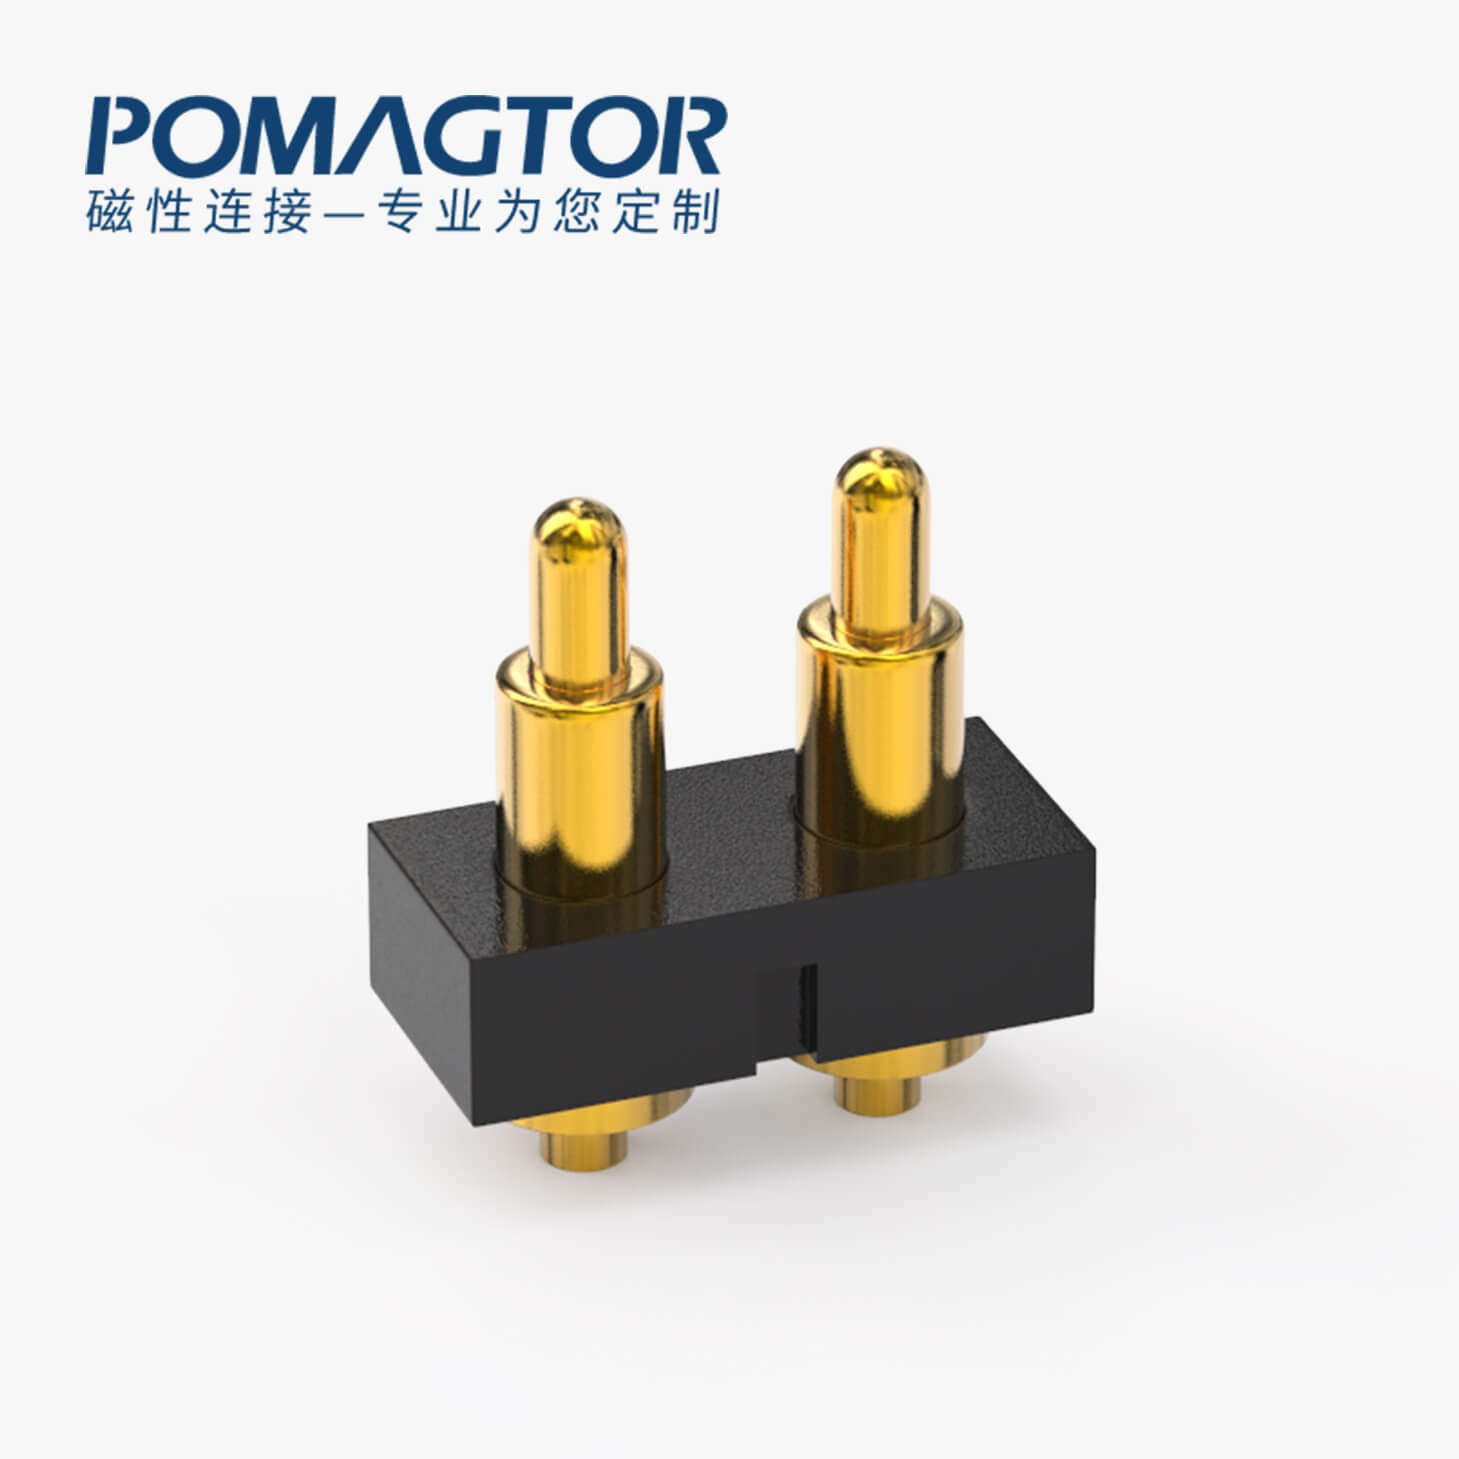 POGO PIN連接器 DIP式：2PIN，電鍍黃銅Au4u，電壓36V，電流1A，工作行程1.0mm:35±20gf，彈力30000次+，工作溫度-30°~85°